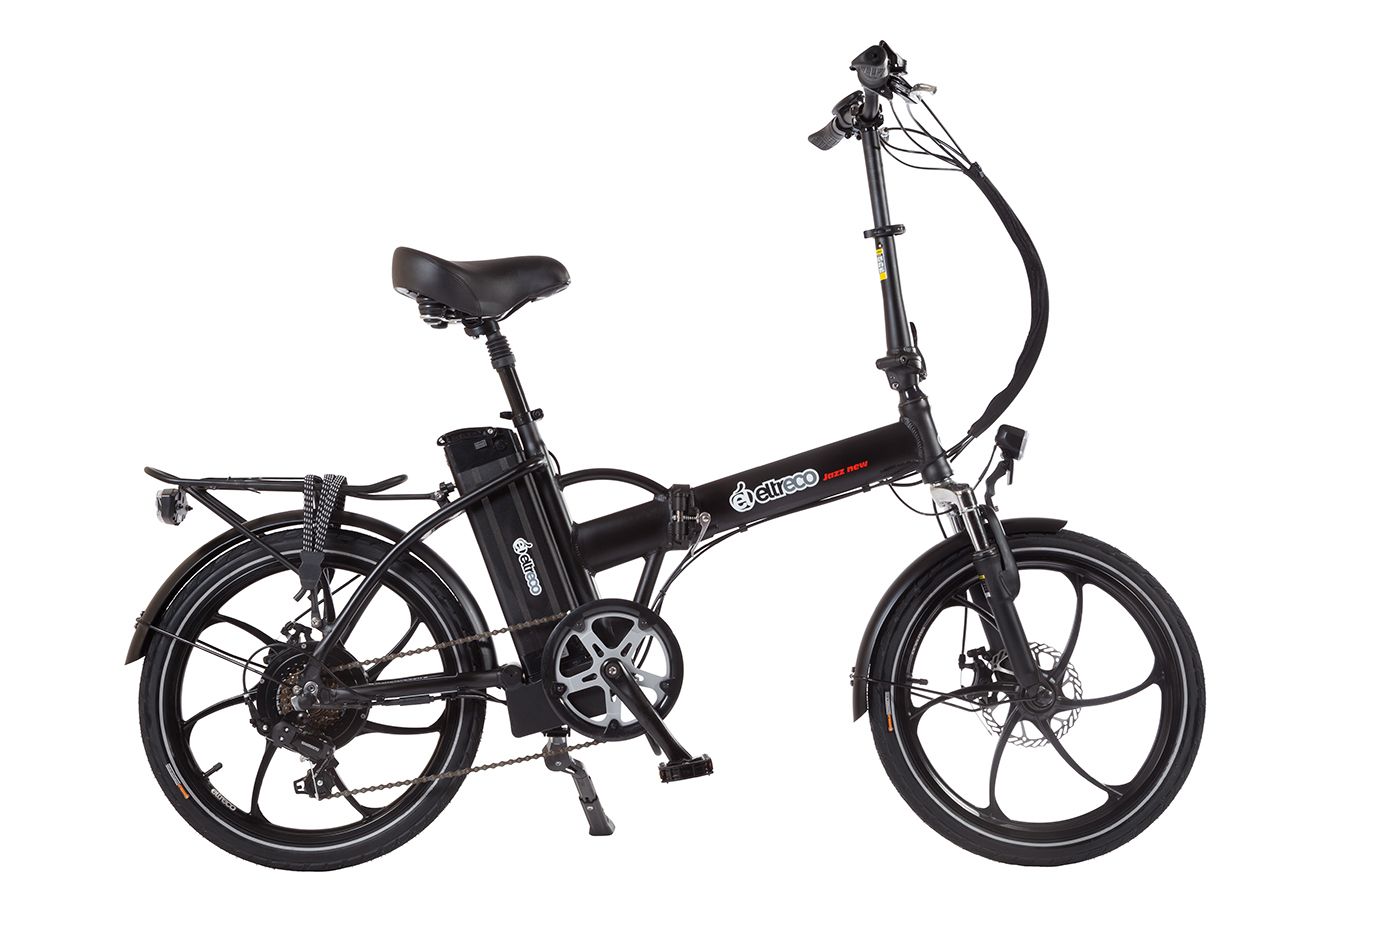  Велосипед Eltreco Jazz 5.0 500W 2016